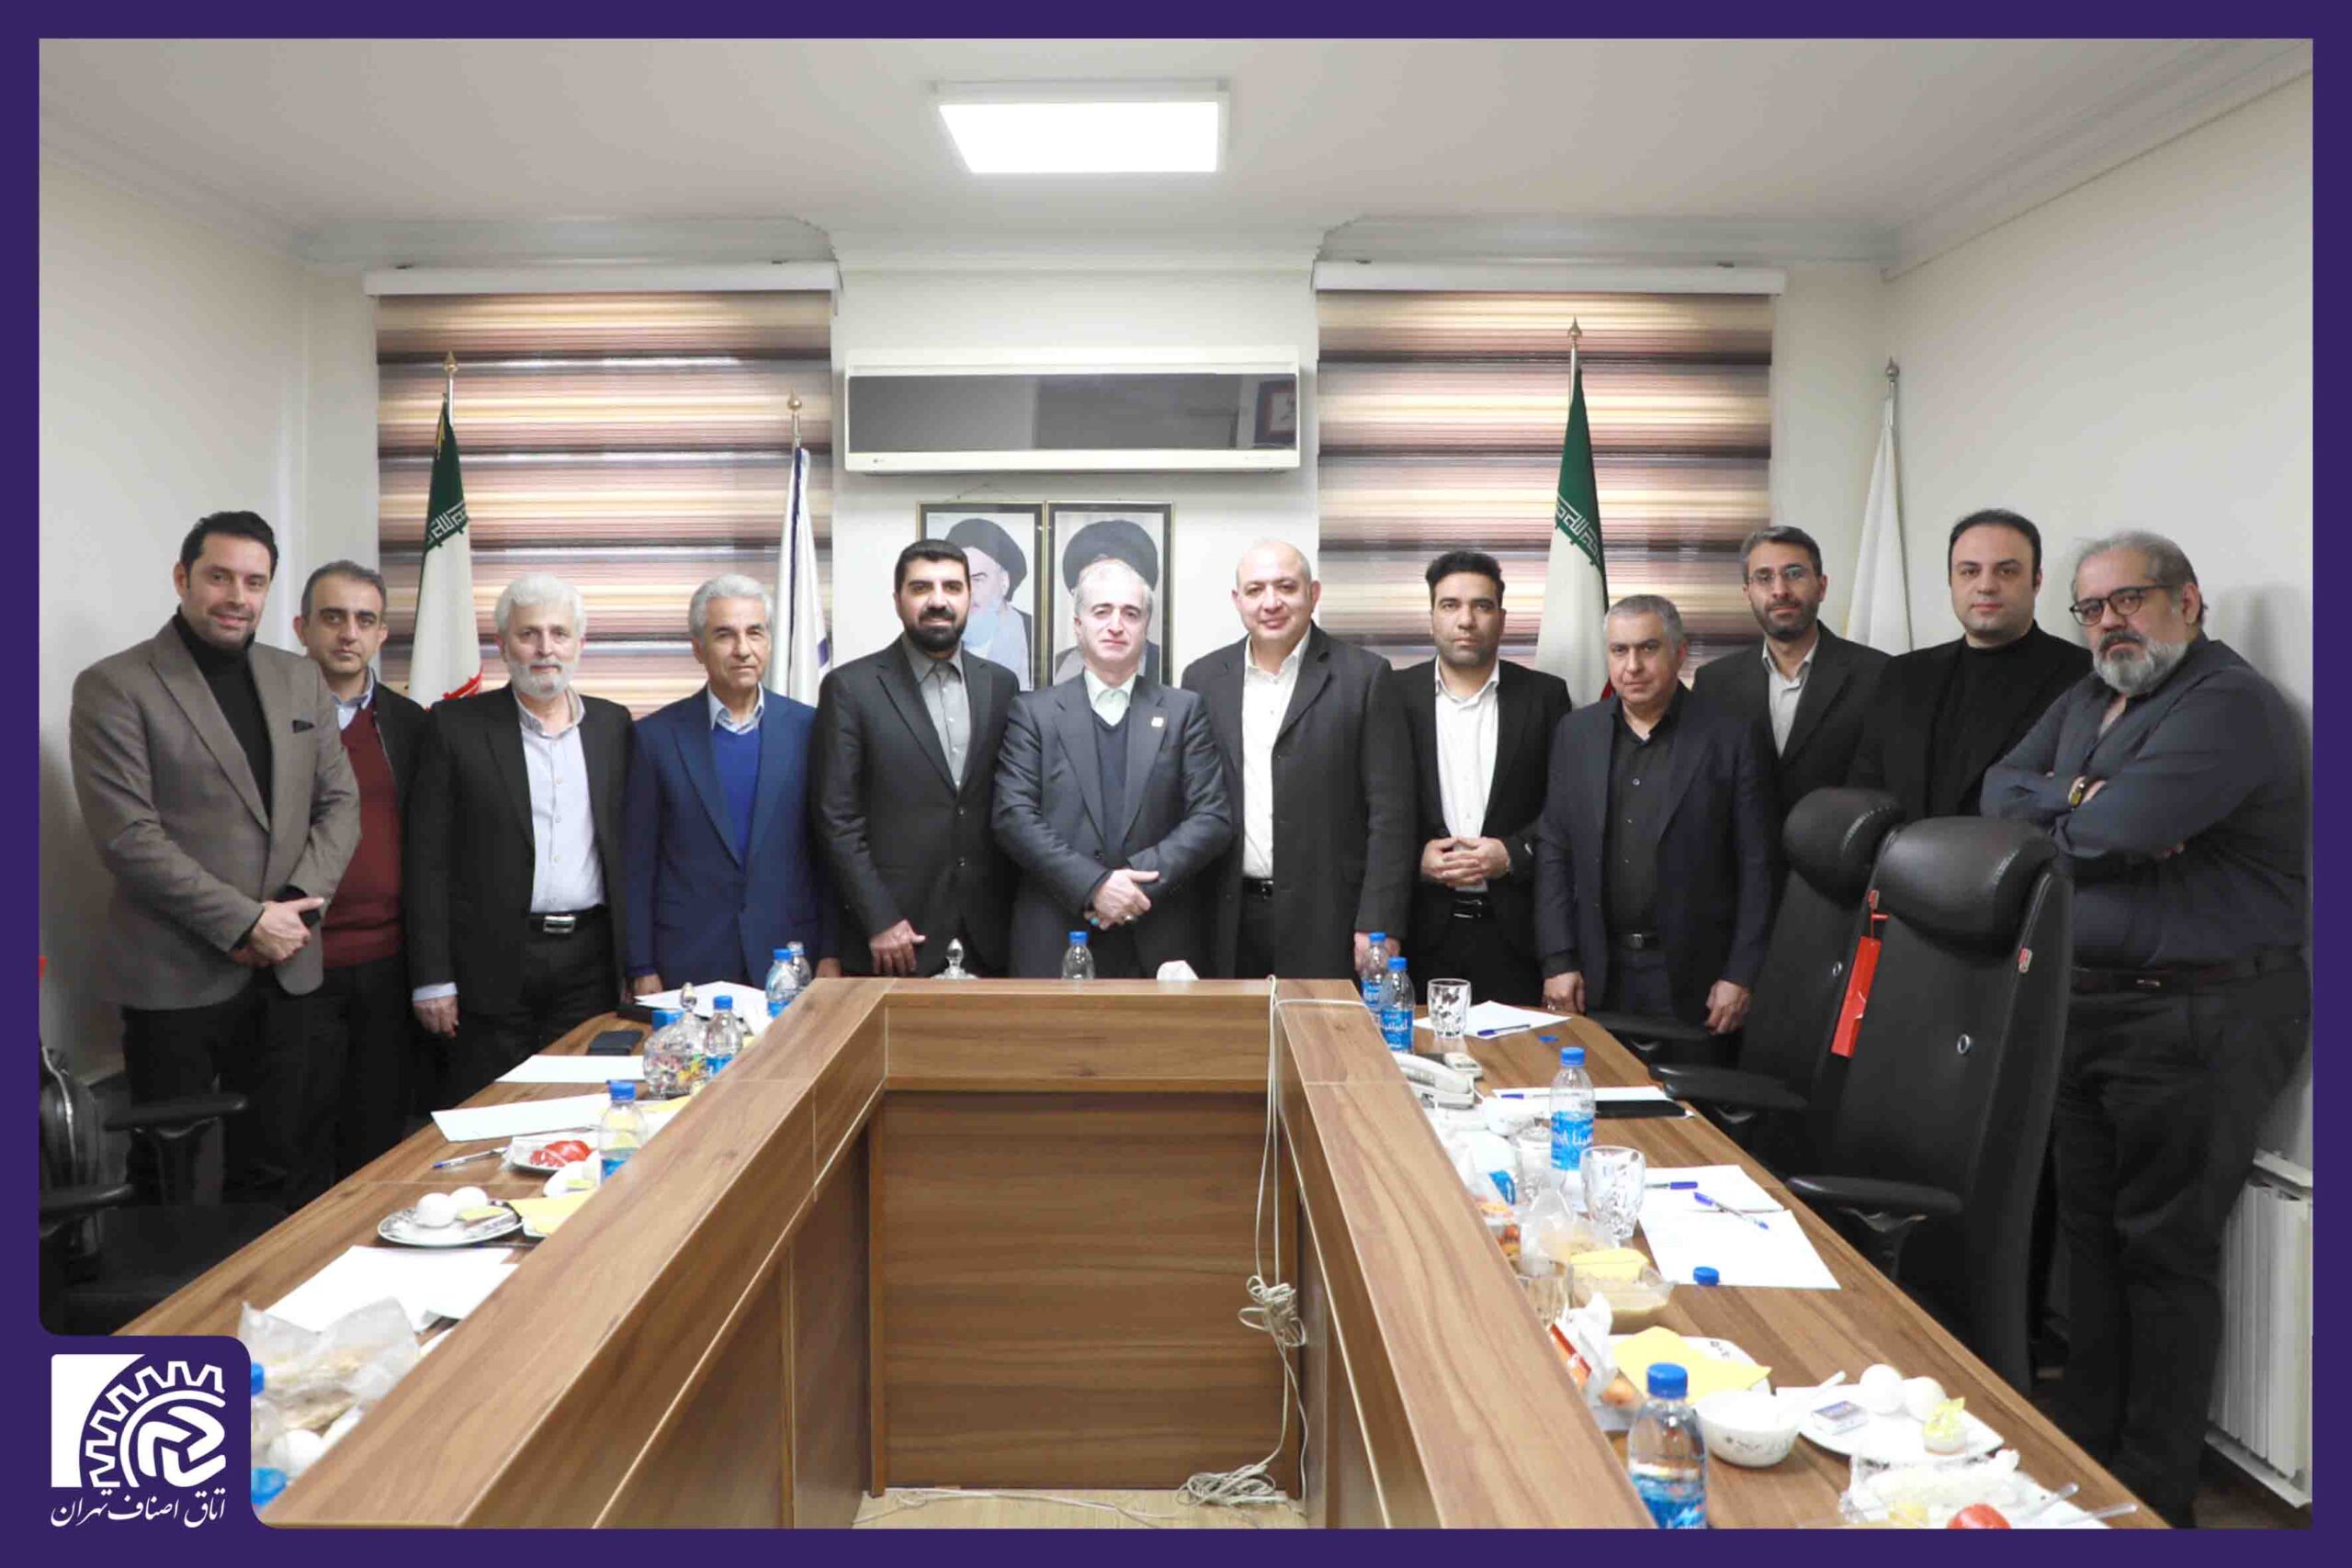 بازدید رئیس اتاق اصناف تهران از اتحادیه صنف رستوران و چلوکباب تهران